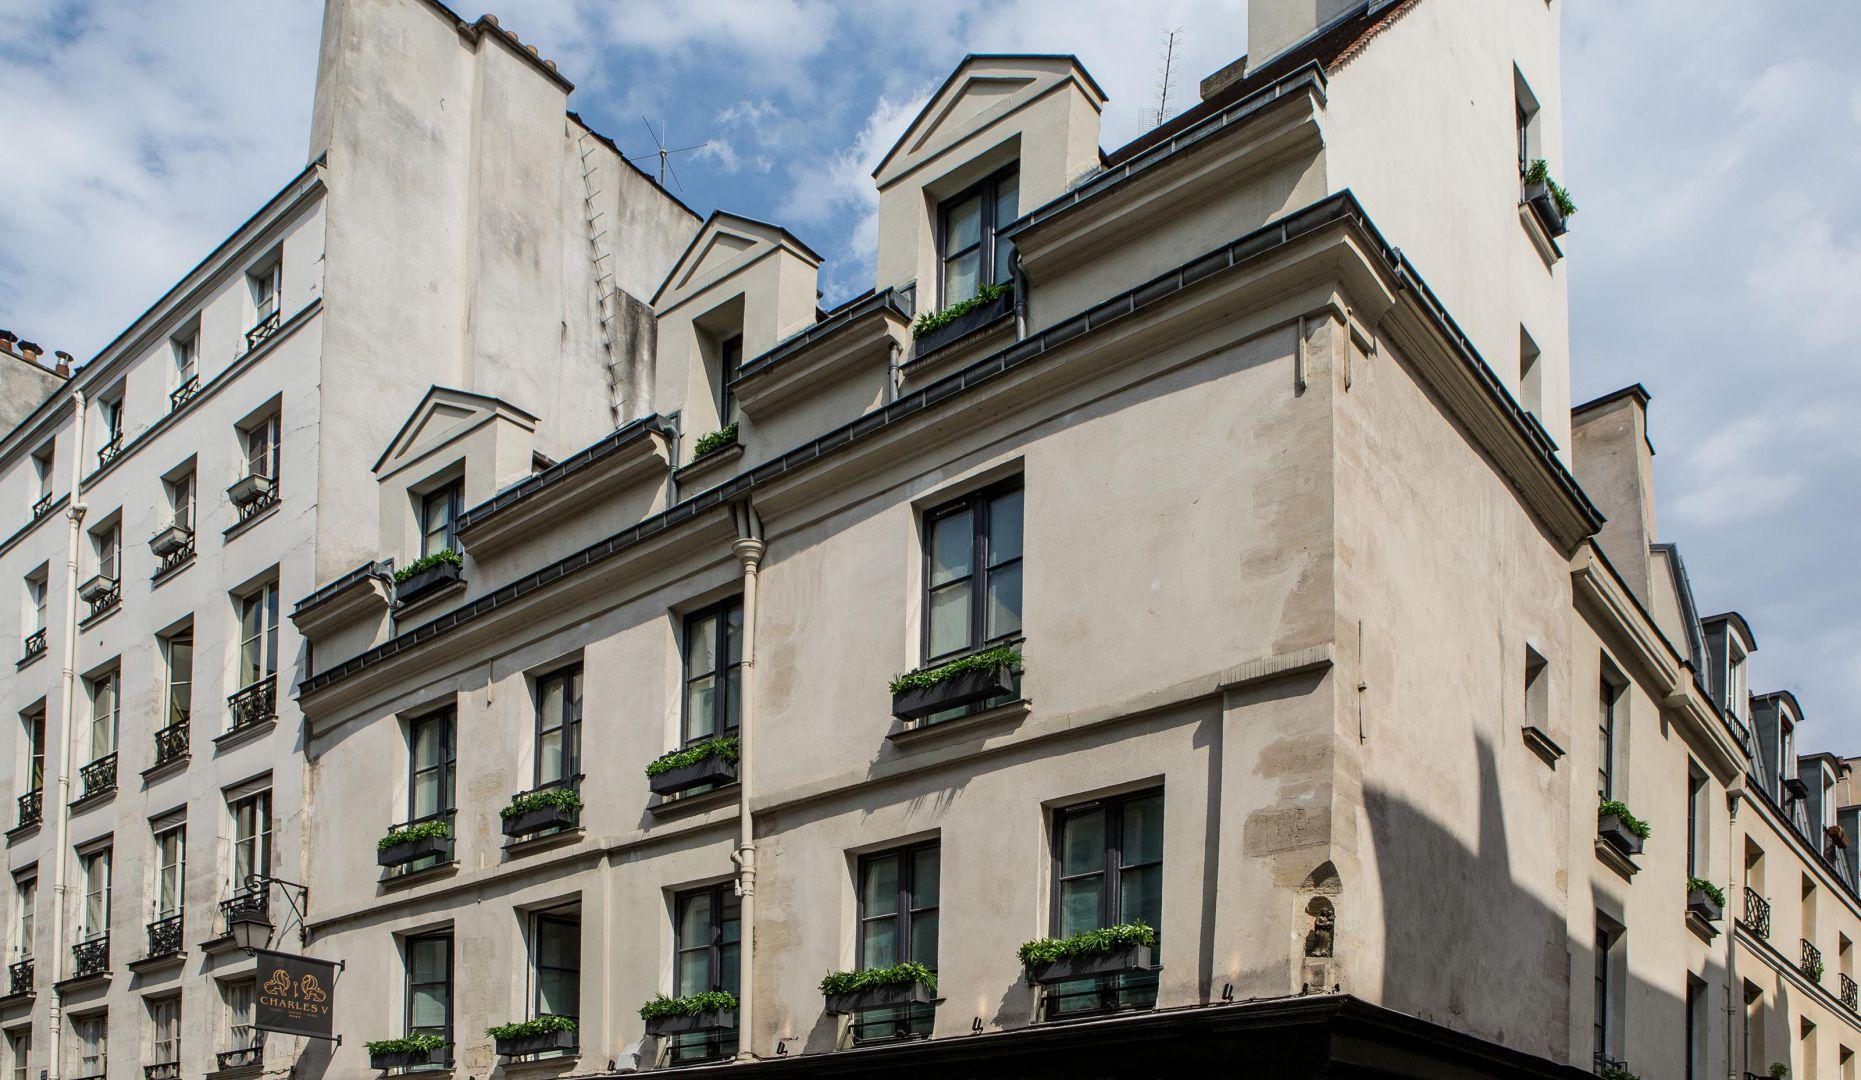 Charles V Hotell Paris Exteriör bild